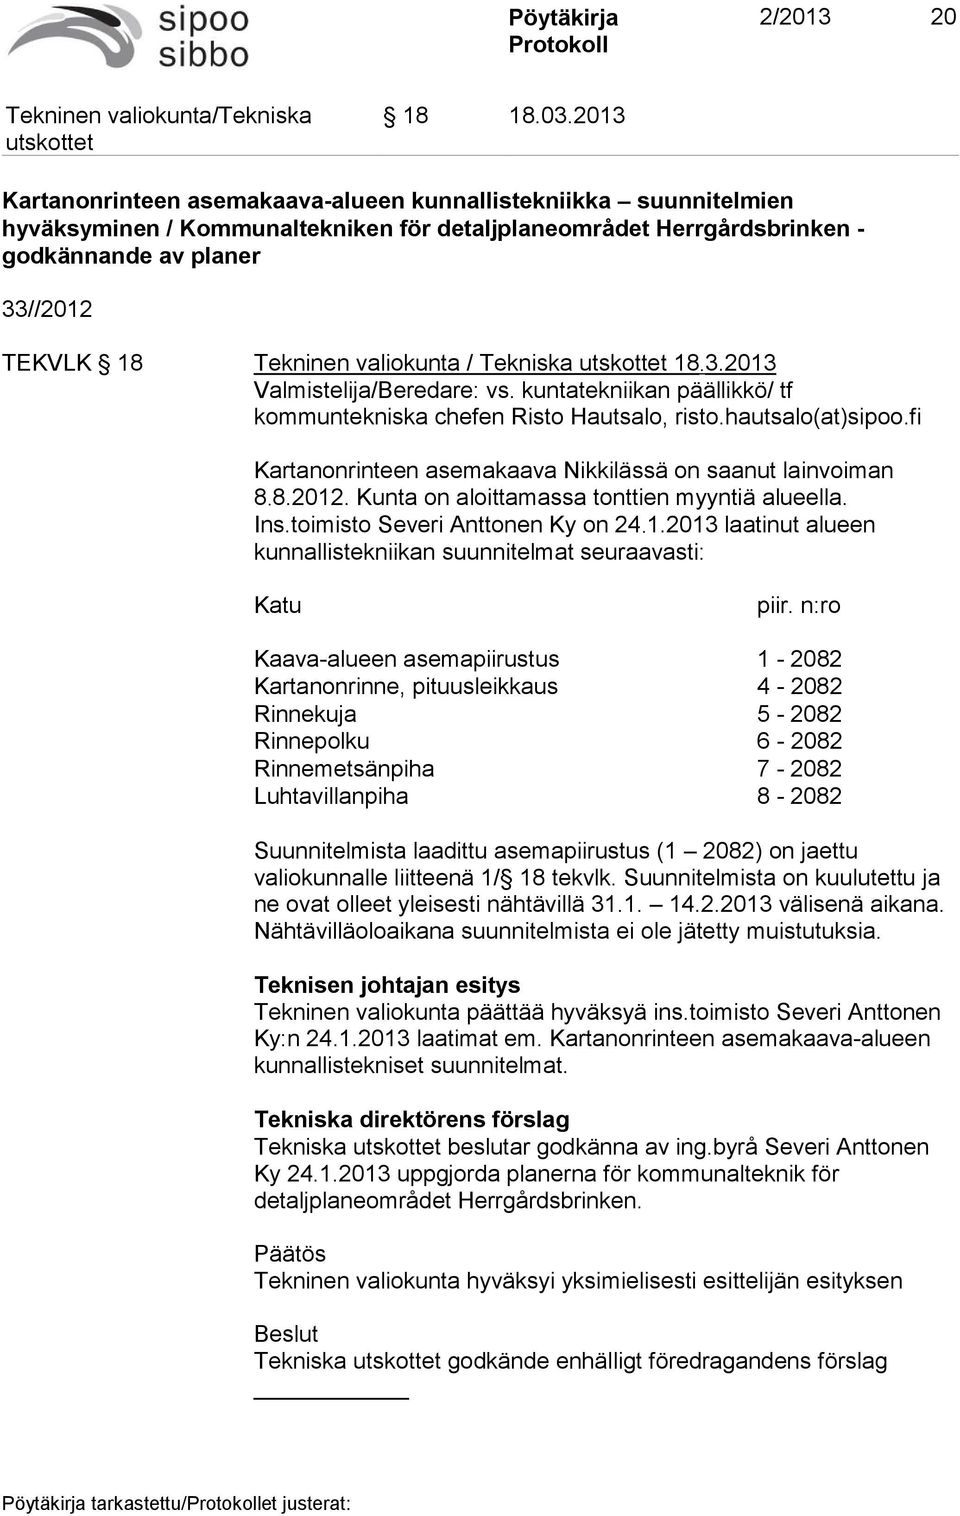 valiokunta / Tekniska 18.3.2013 Valmistelija/Beredare: vs. kuntatekniikan päällikkö/ tf kommuntekniska chefen Risto Hautsalo, risto.hautsalo(at)sipoo.